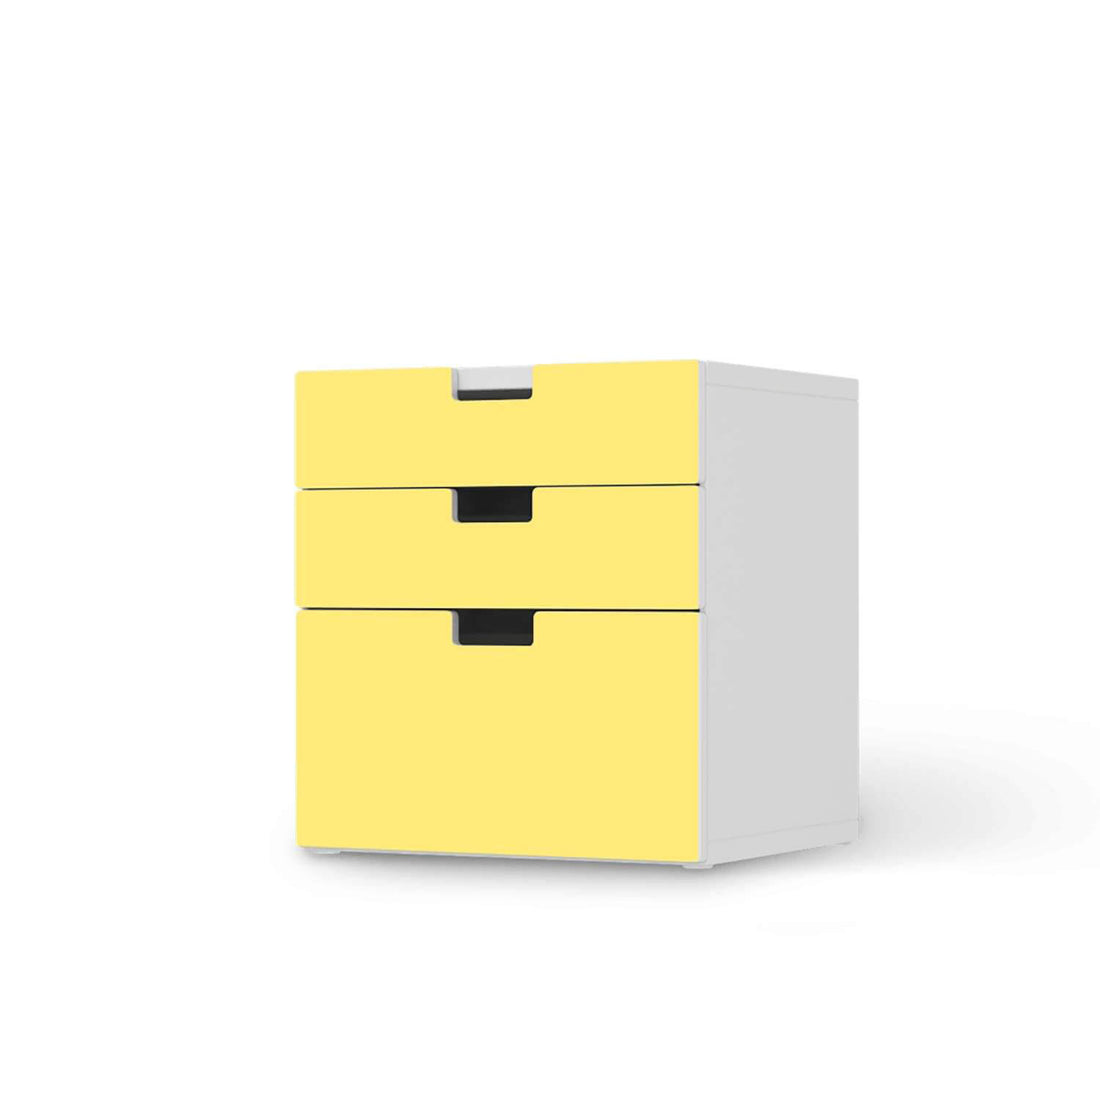 Folie für Möbel Gelb Light - IKEA Stuva Kommode - 3 Schubladen (Kombination 1)  - weiss